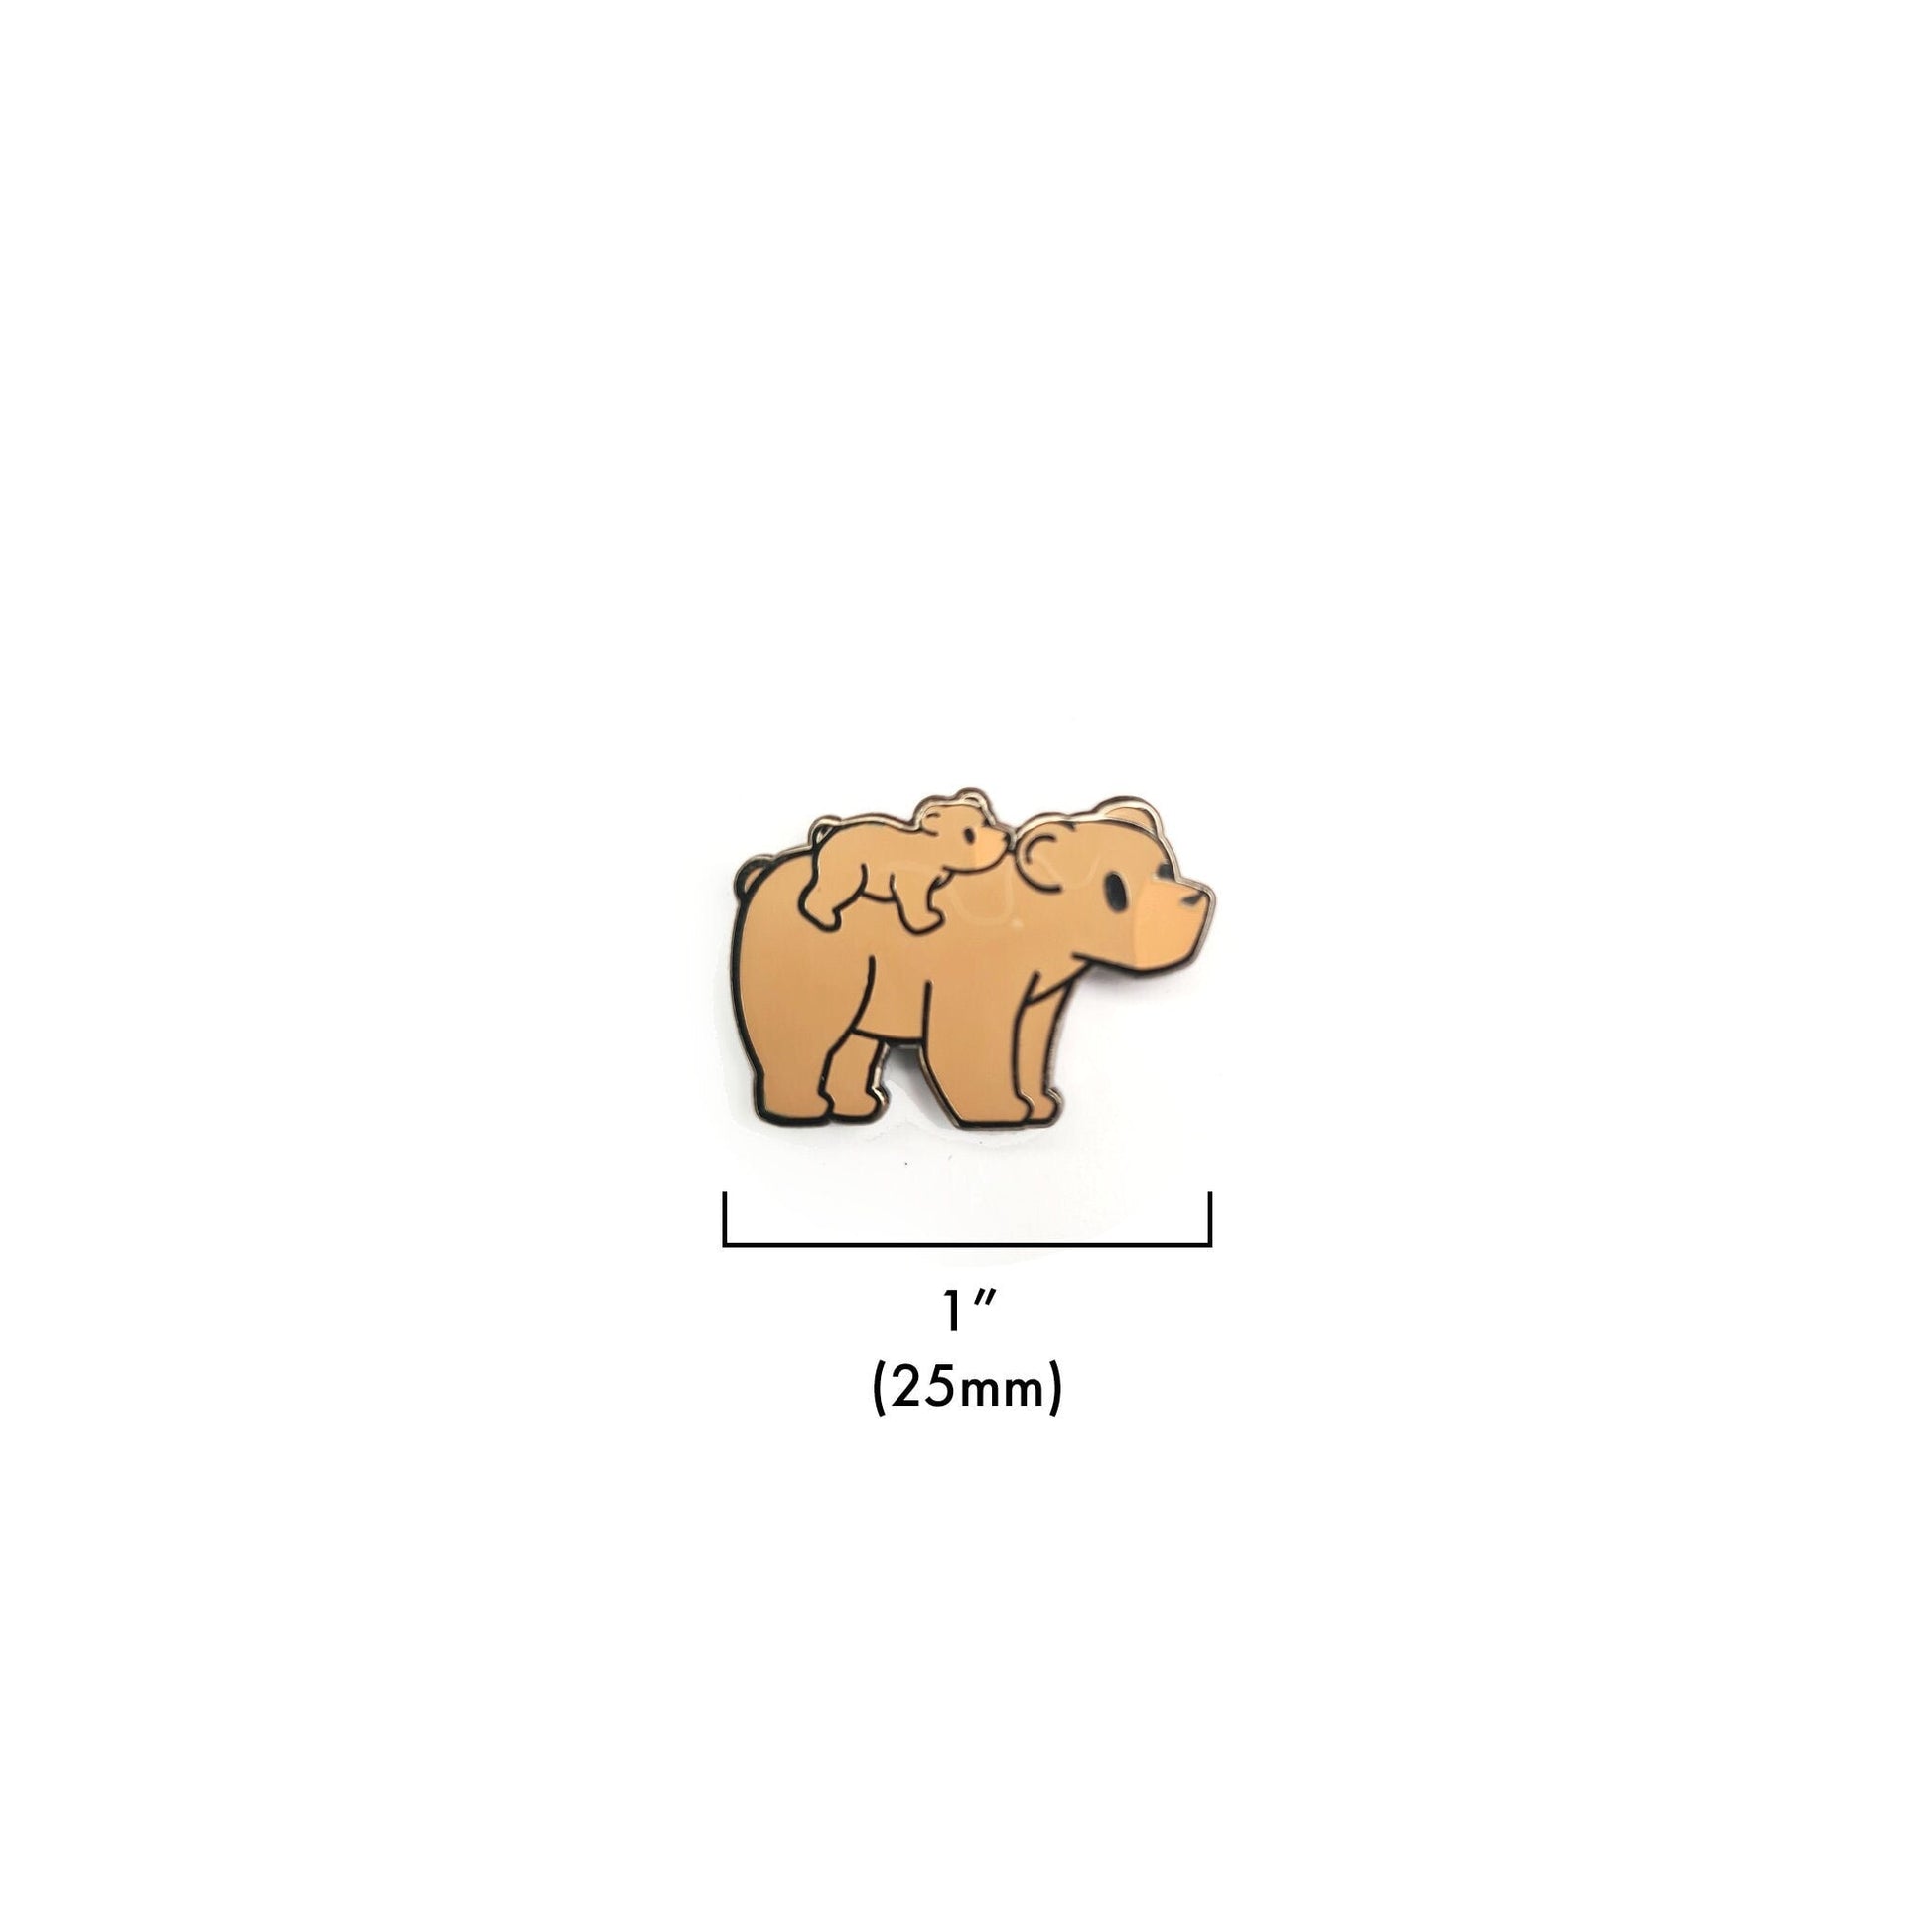 Papa Bear and Baby Bear - Small Enamel Pin Set of 4, Pins, Brooches & Lapel Pins